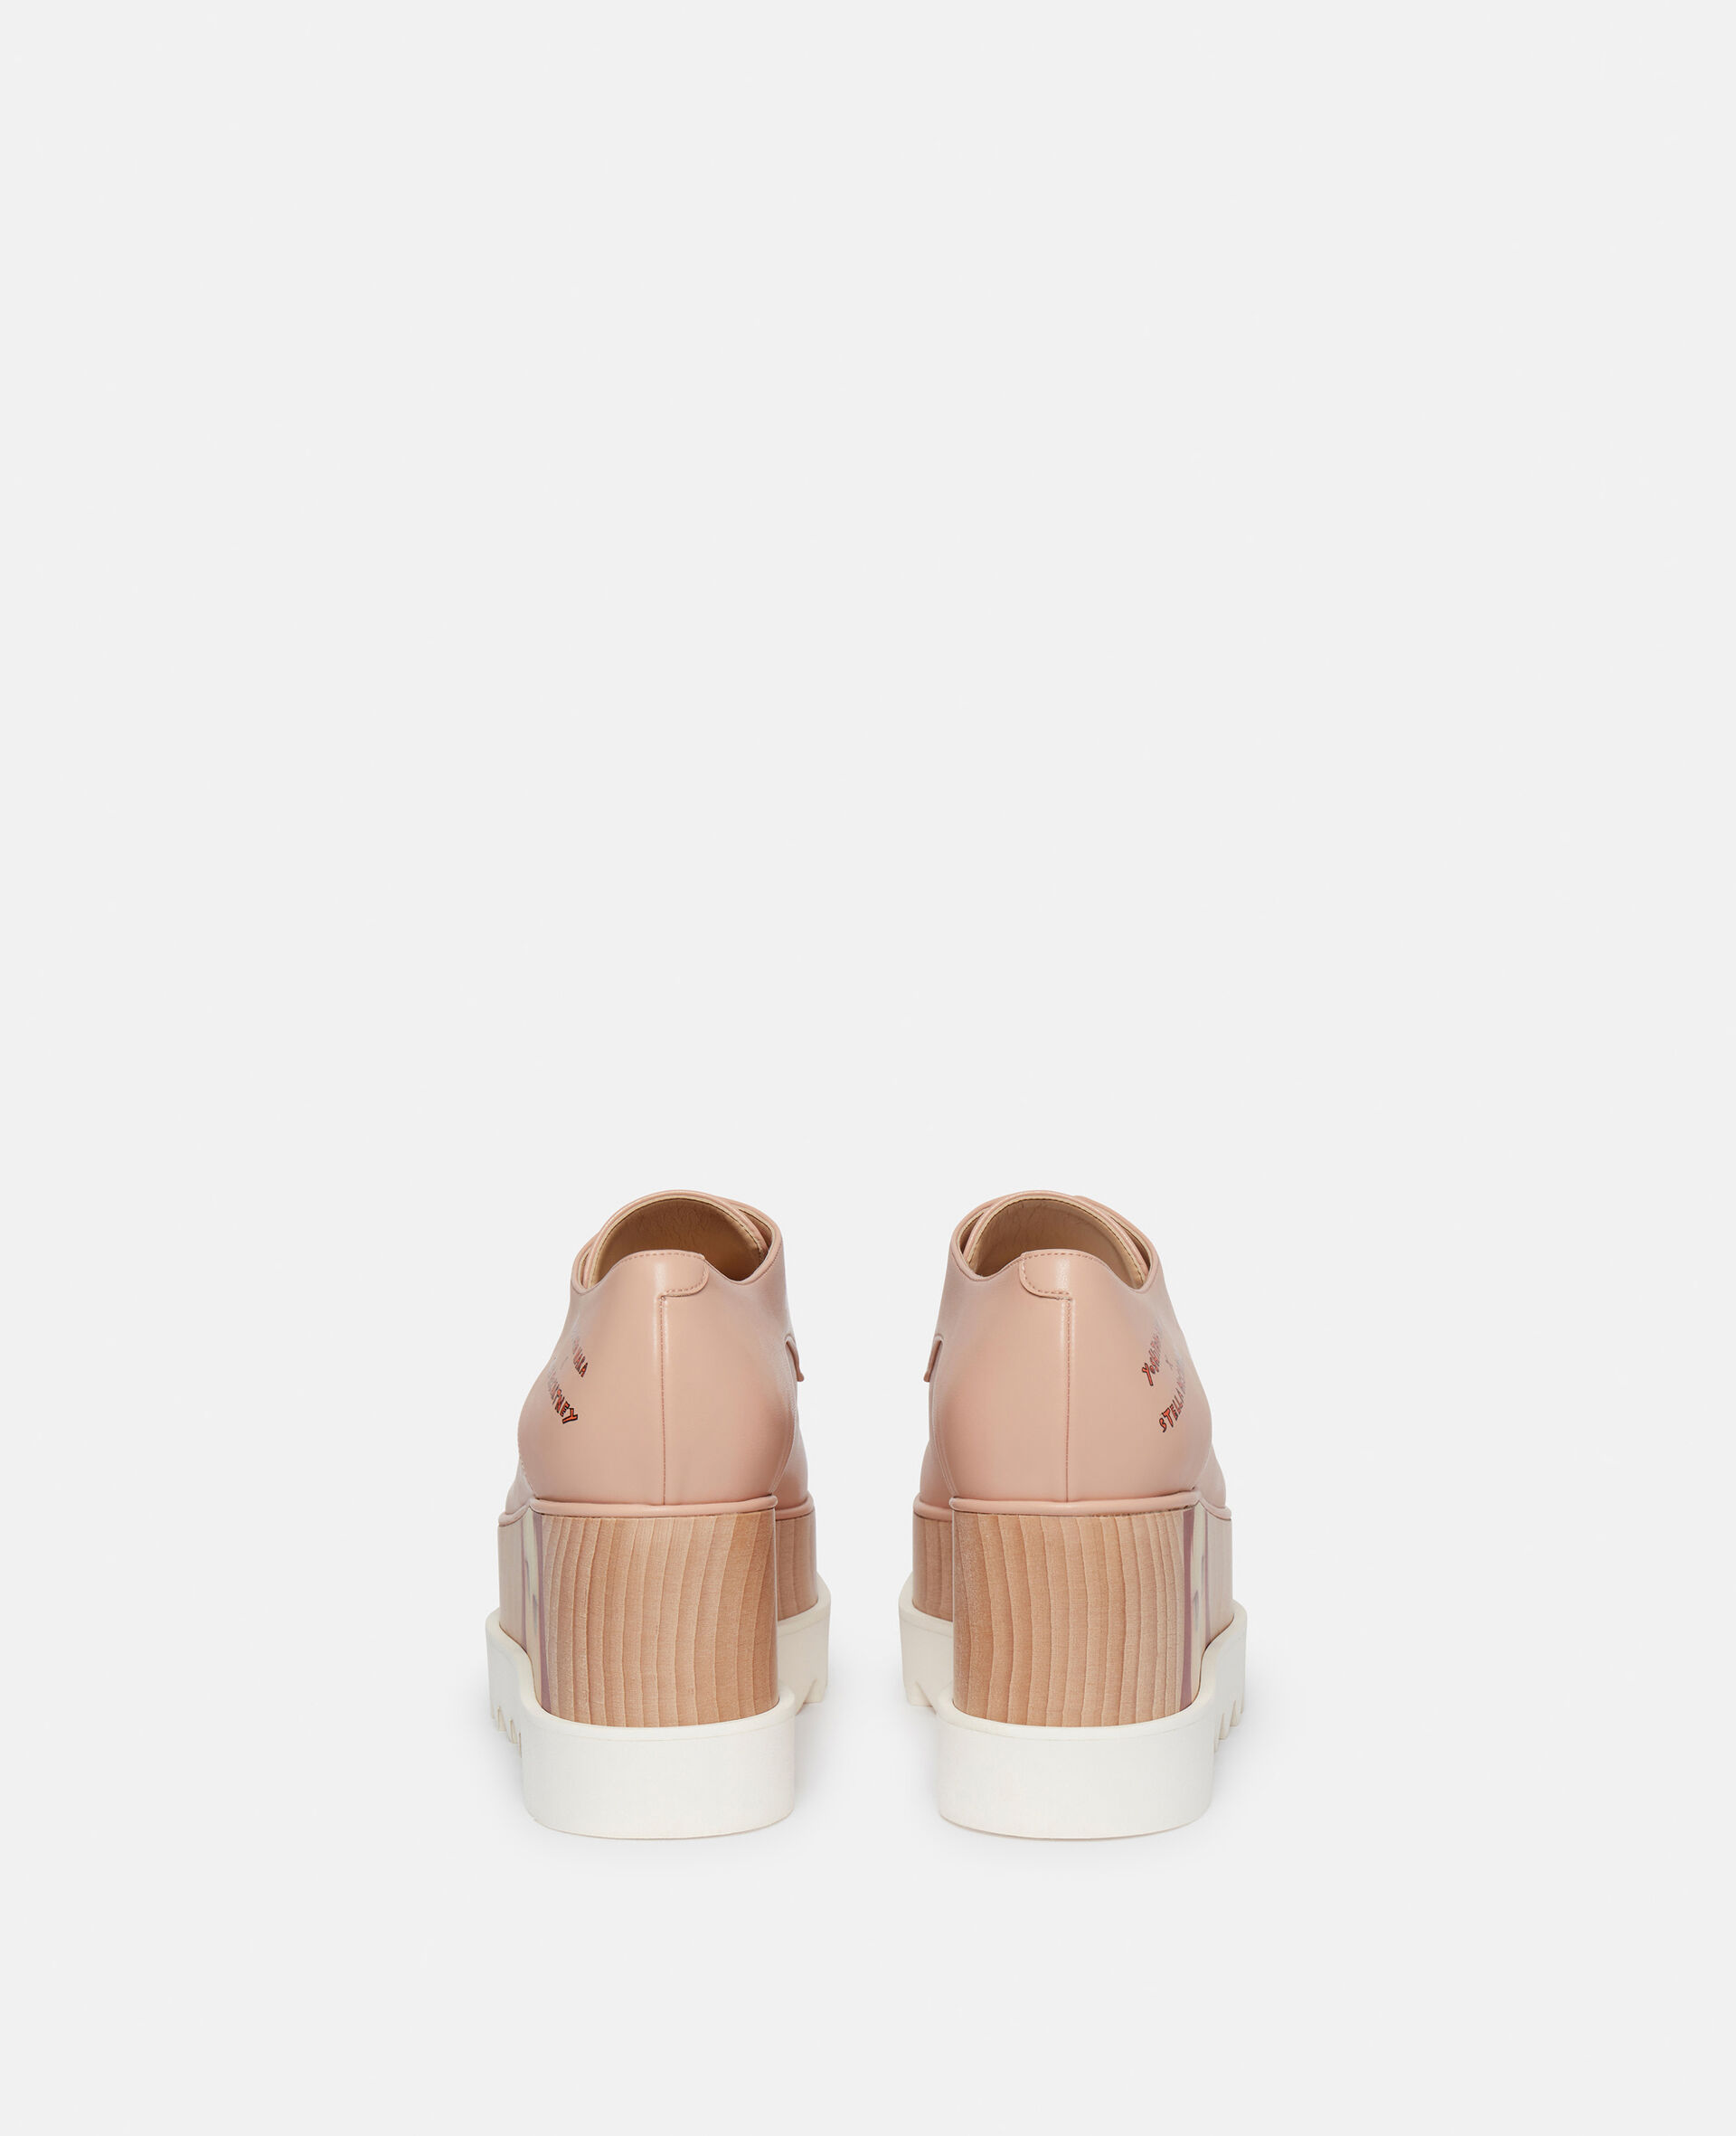 Elyse Twins I Print Platform Shoes-Pink-large image number 2